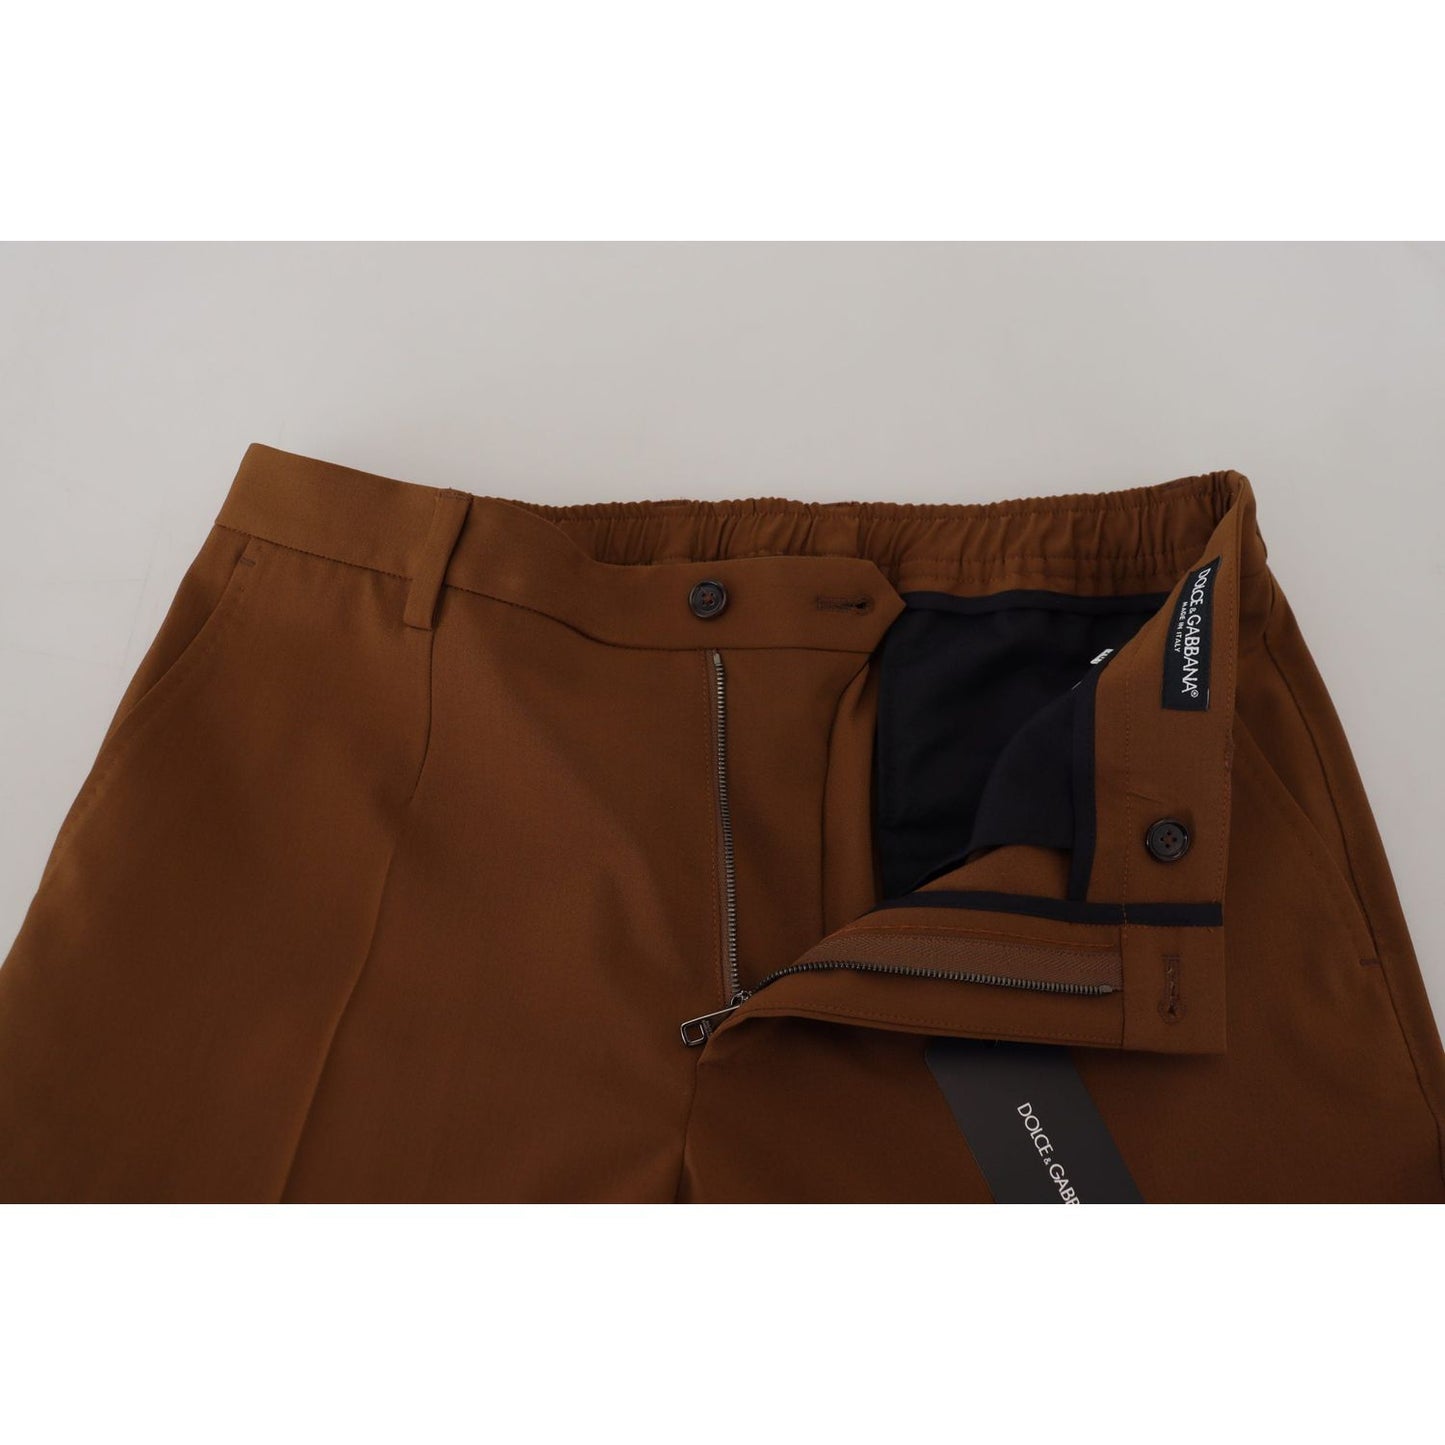 Dolce & Gabbana Elegant Brown Virgin Wool Pants - Italian Crafted brown-wool-chino-skinny-men-pants